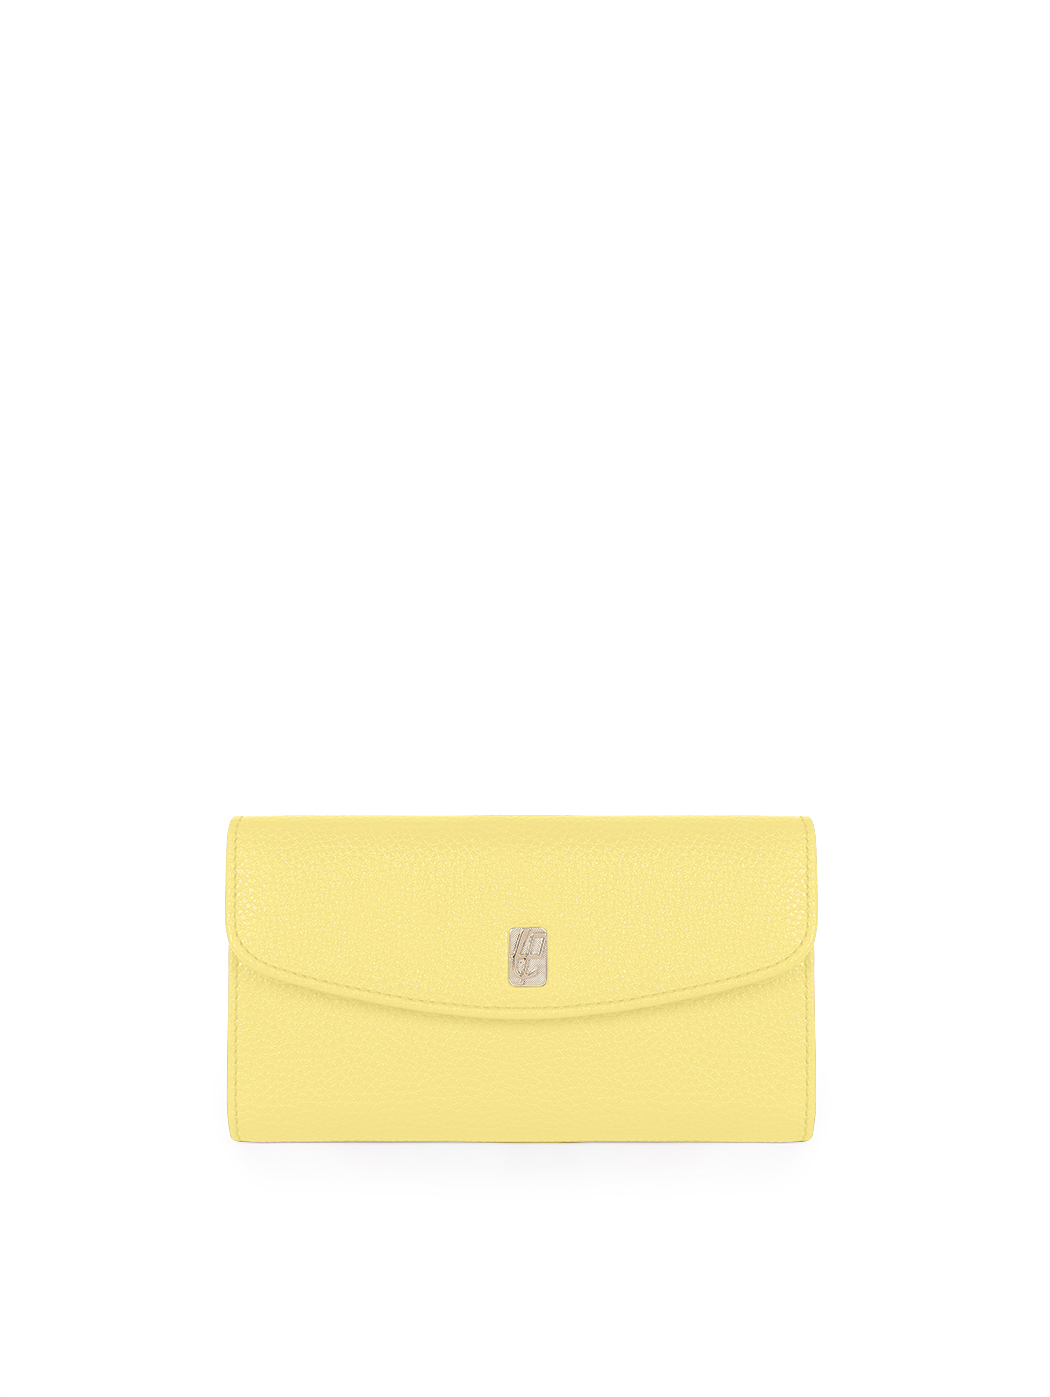 Long wallet in lemon yellow leather